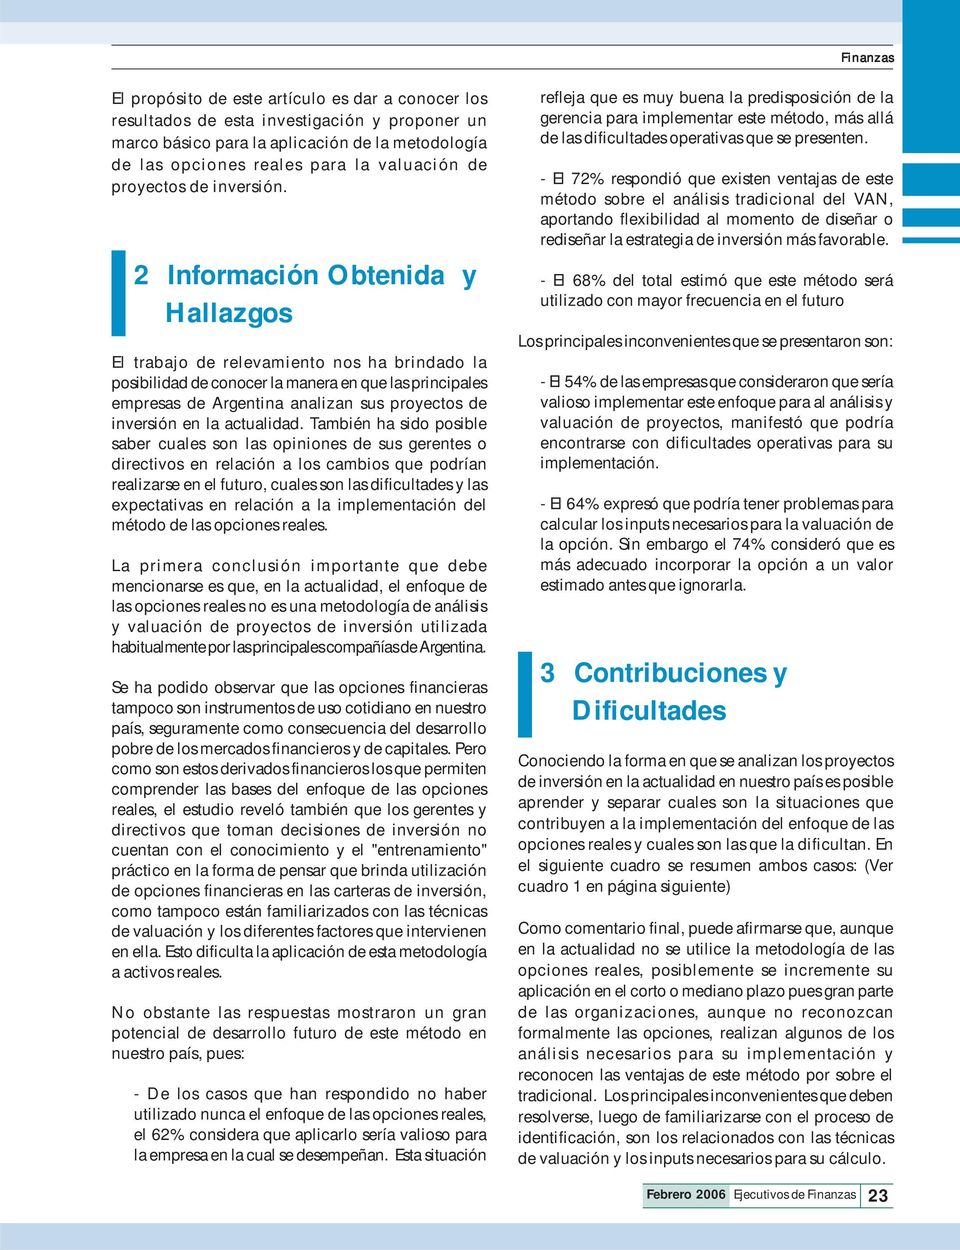 2 Información Obtenida y Hallazgos El trabajo de relevamiento nos ha brindado la posibilidad de conocer la manera en que las principales empresas de Argentina analizan sus proyectos de inversión en